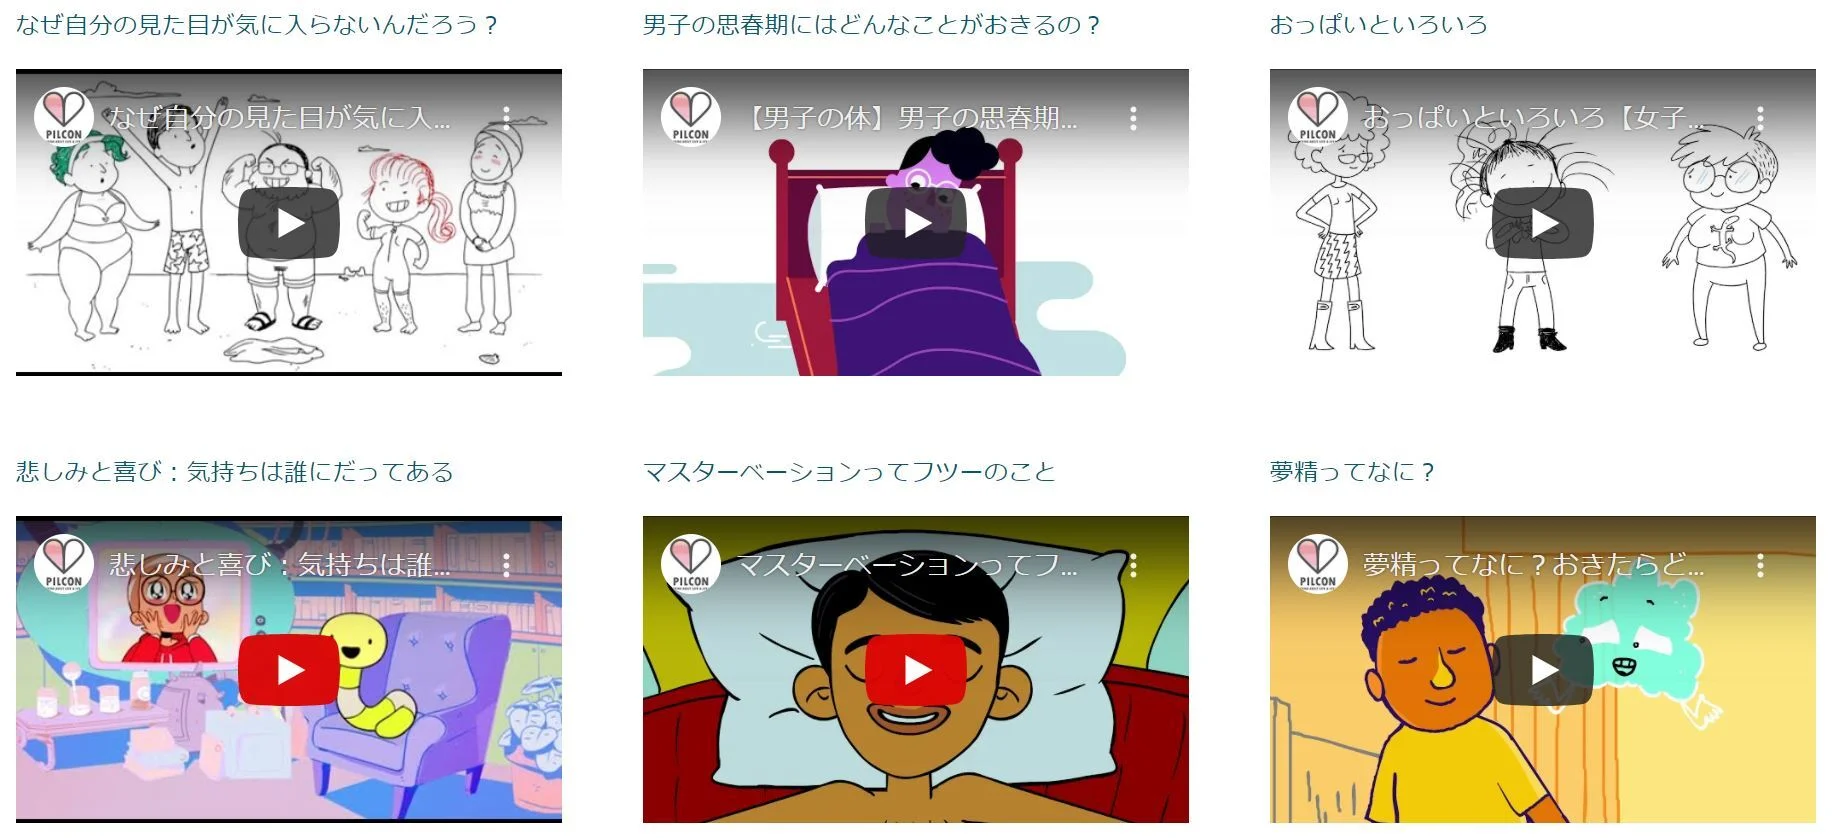 サイト上の教材「10代ってどんな時期？自分の体、どう思う？」の関連動画の一覧。アニメーションを用いた2分～５分程度のレクチャー動画となっている。
